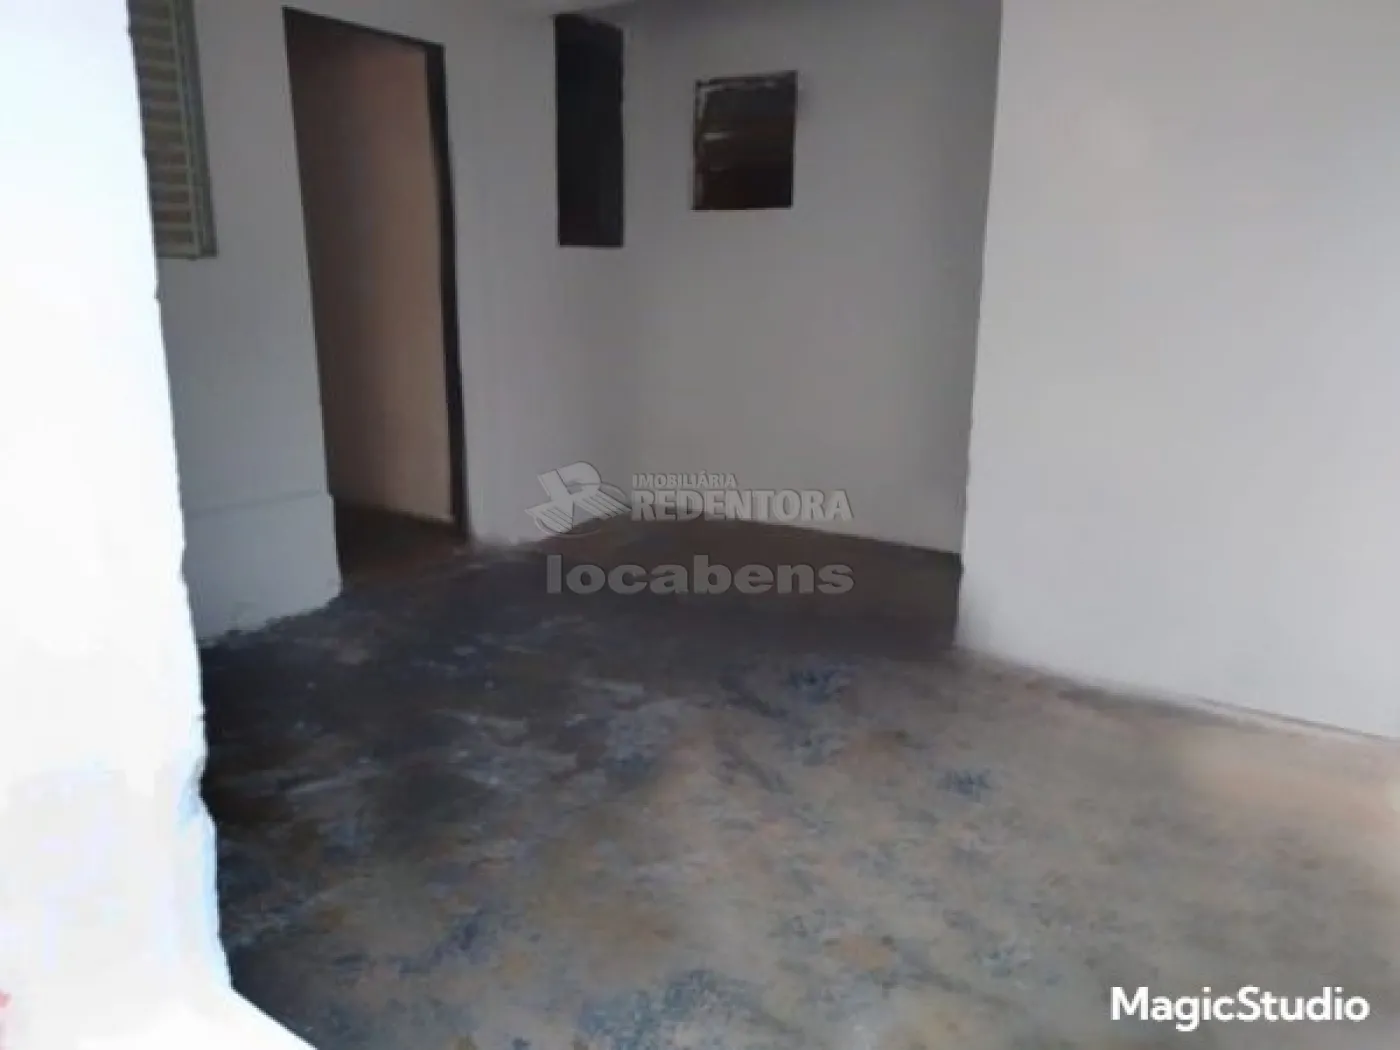 Comprar Casa / Padrão em São José do Rio Preto apenas R$ 280.000,00 - Foto 6